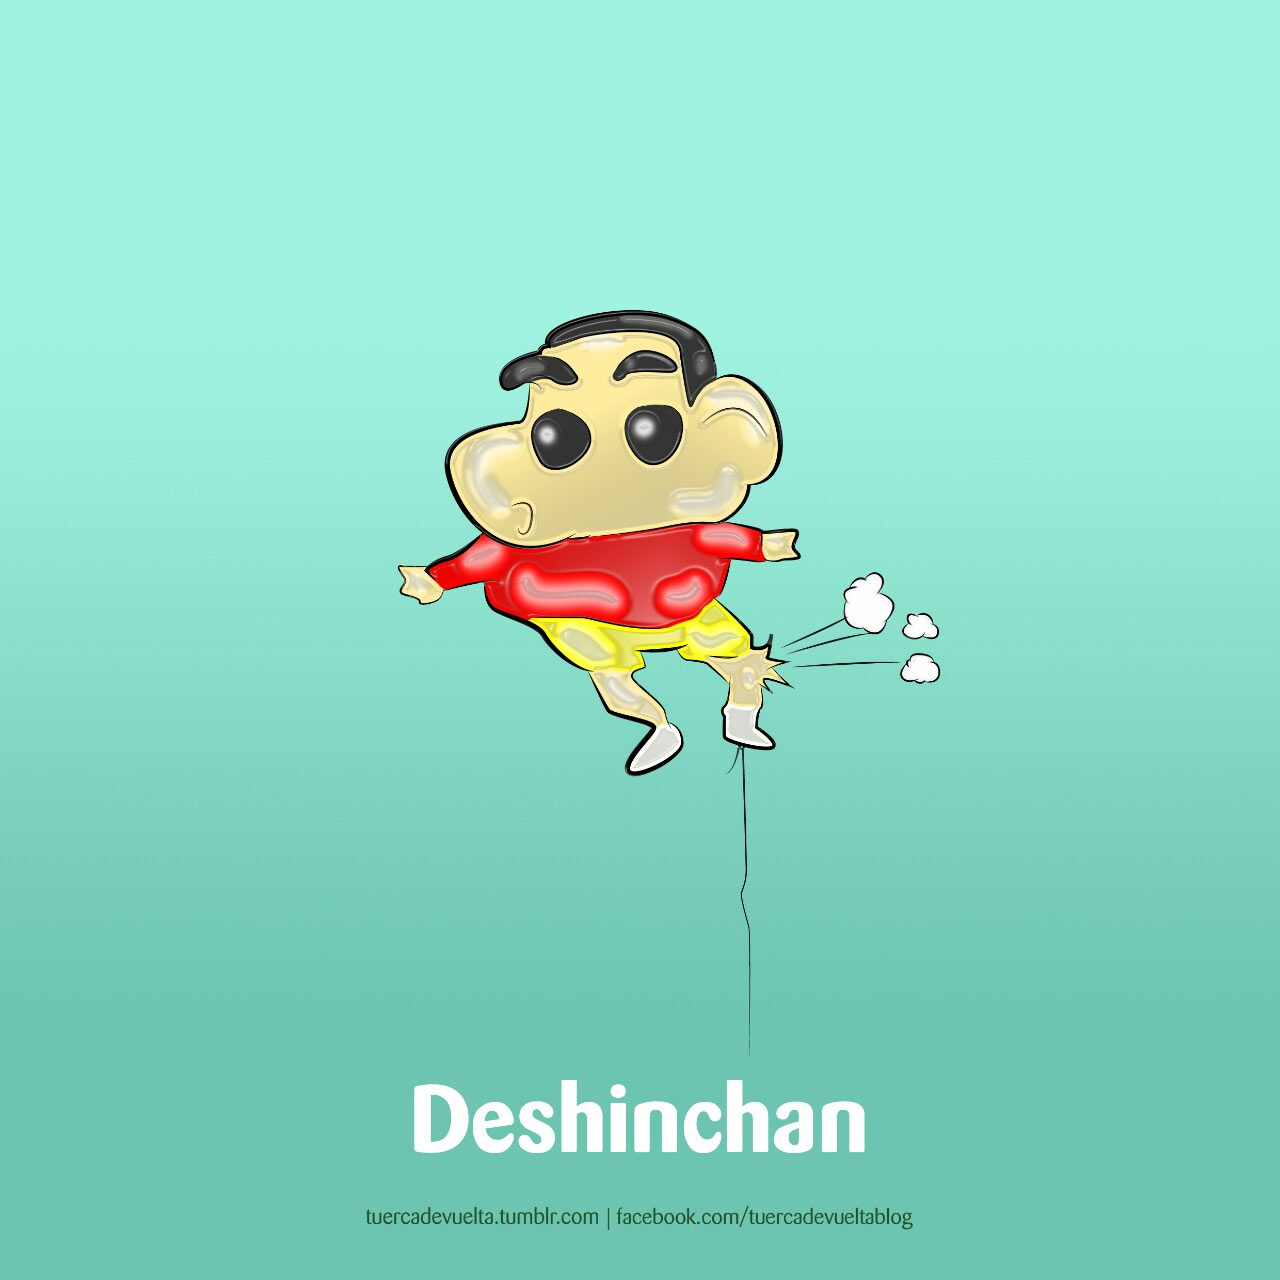 Deshinchan